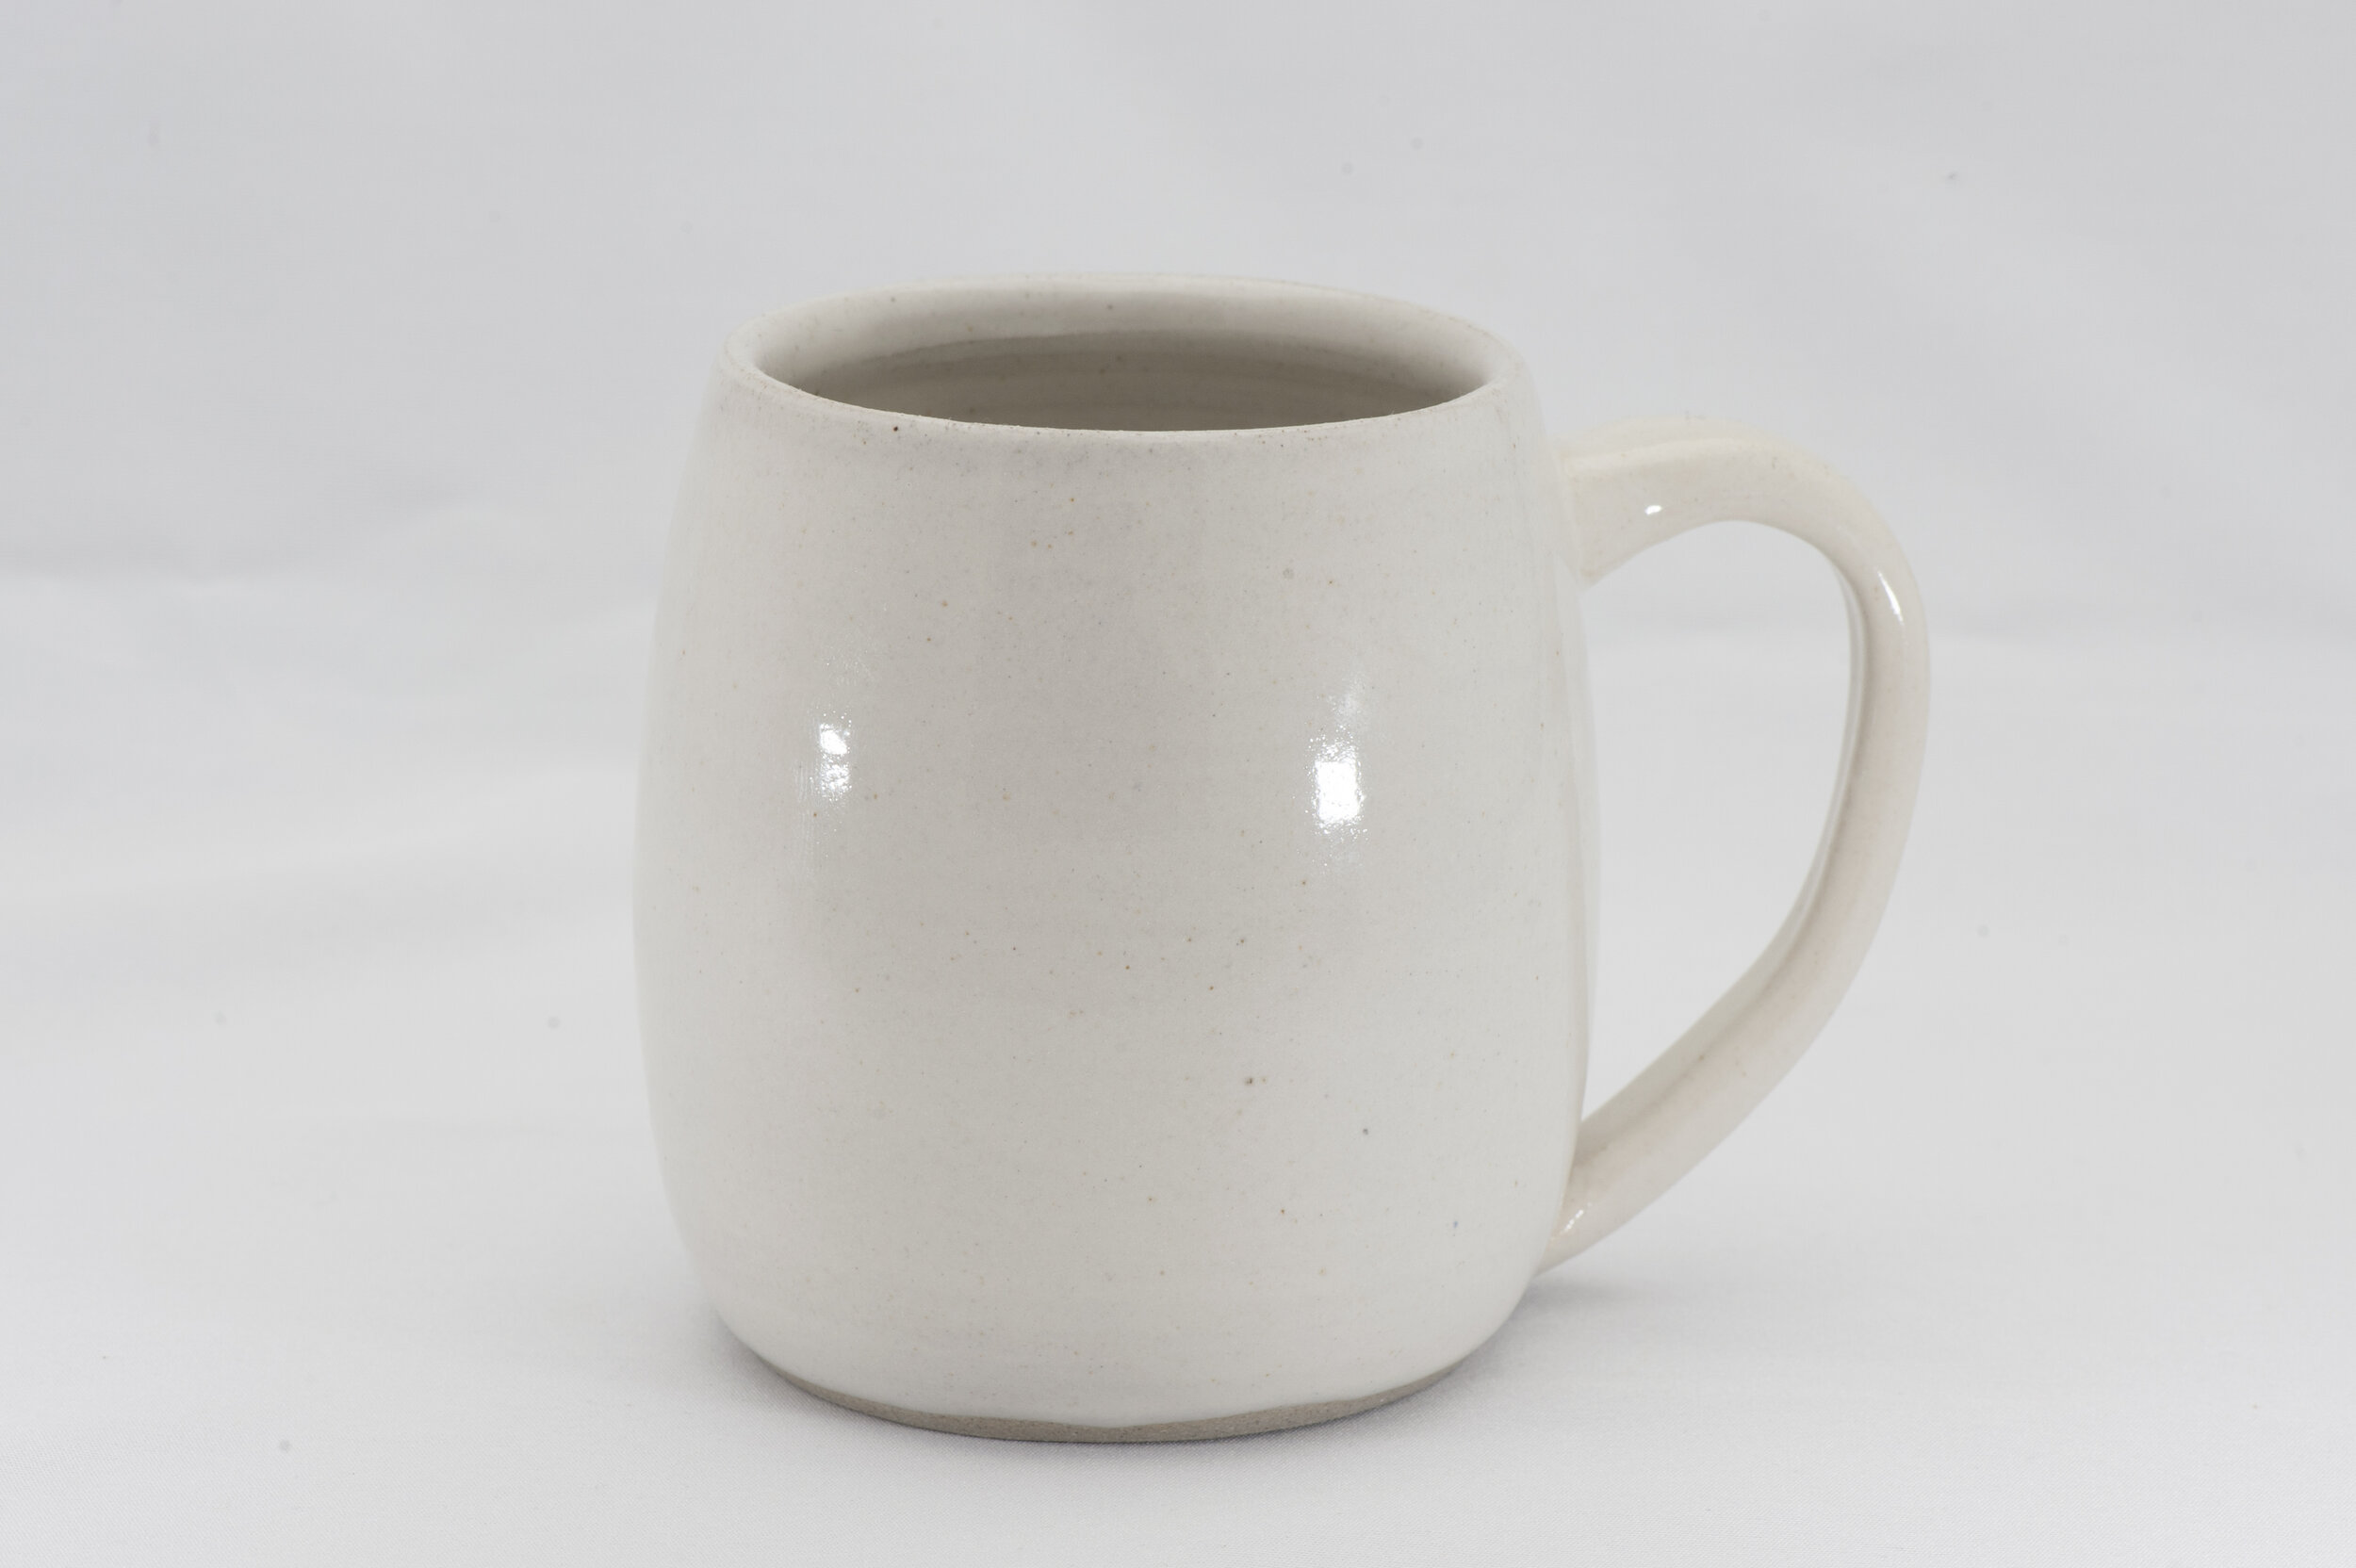 The mug handmade by KJ at Viva Clayworks